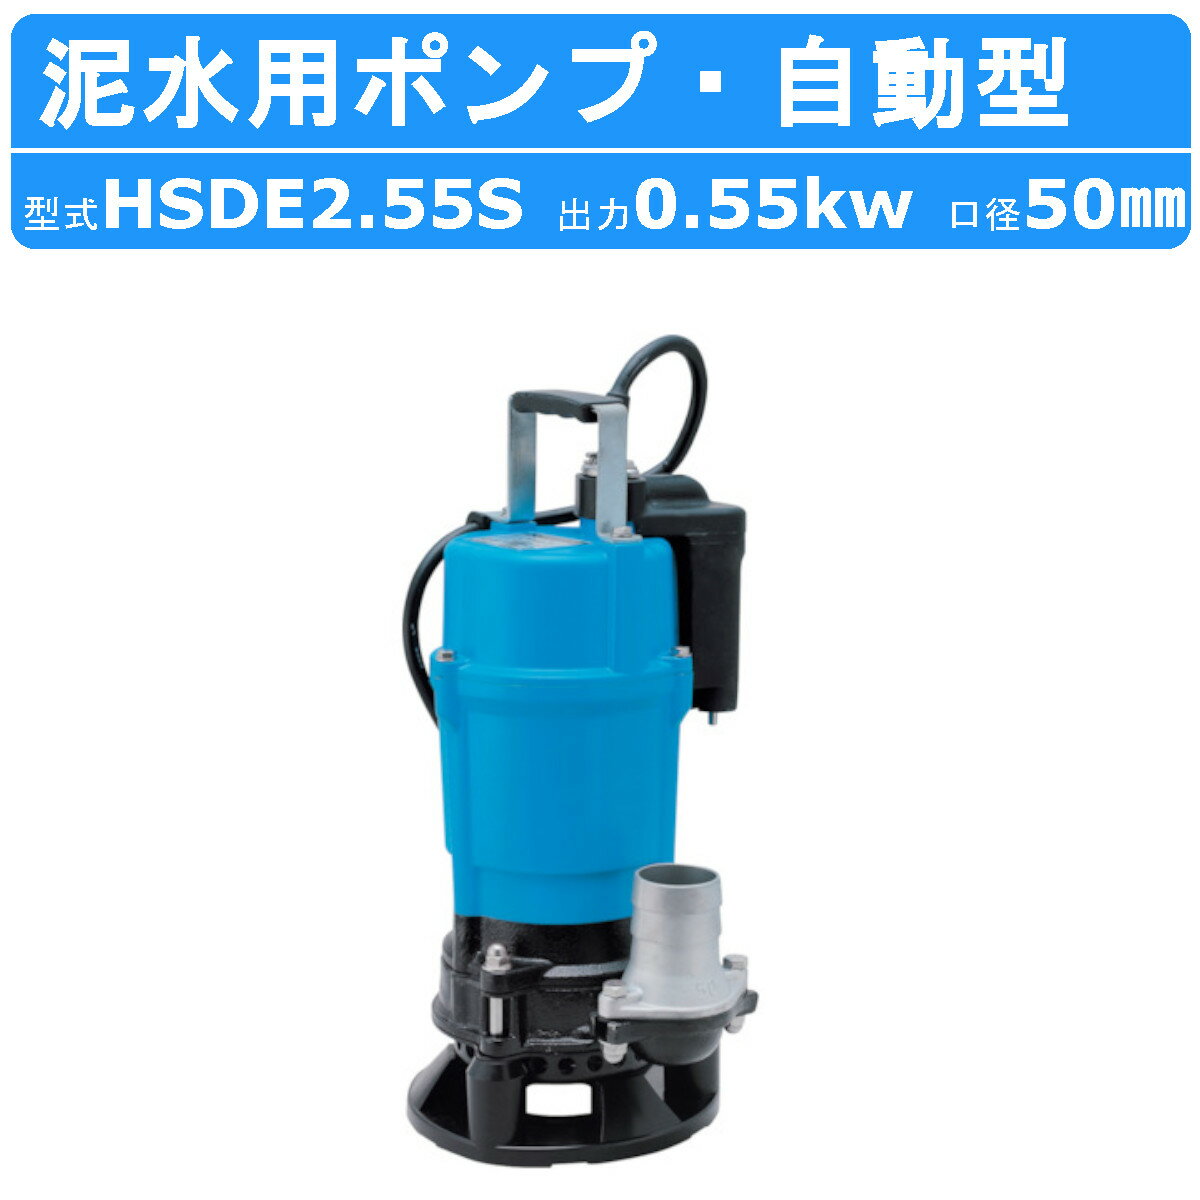 ツルミ 泥水用 水中ポンプ HSDE2.55S 自動型 10